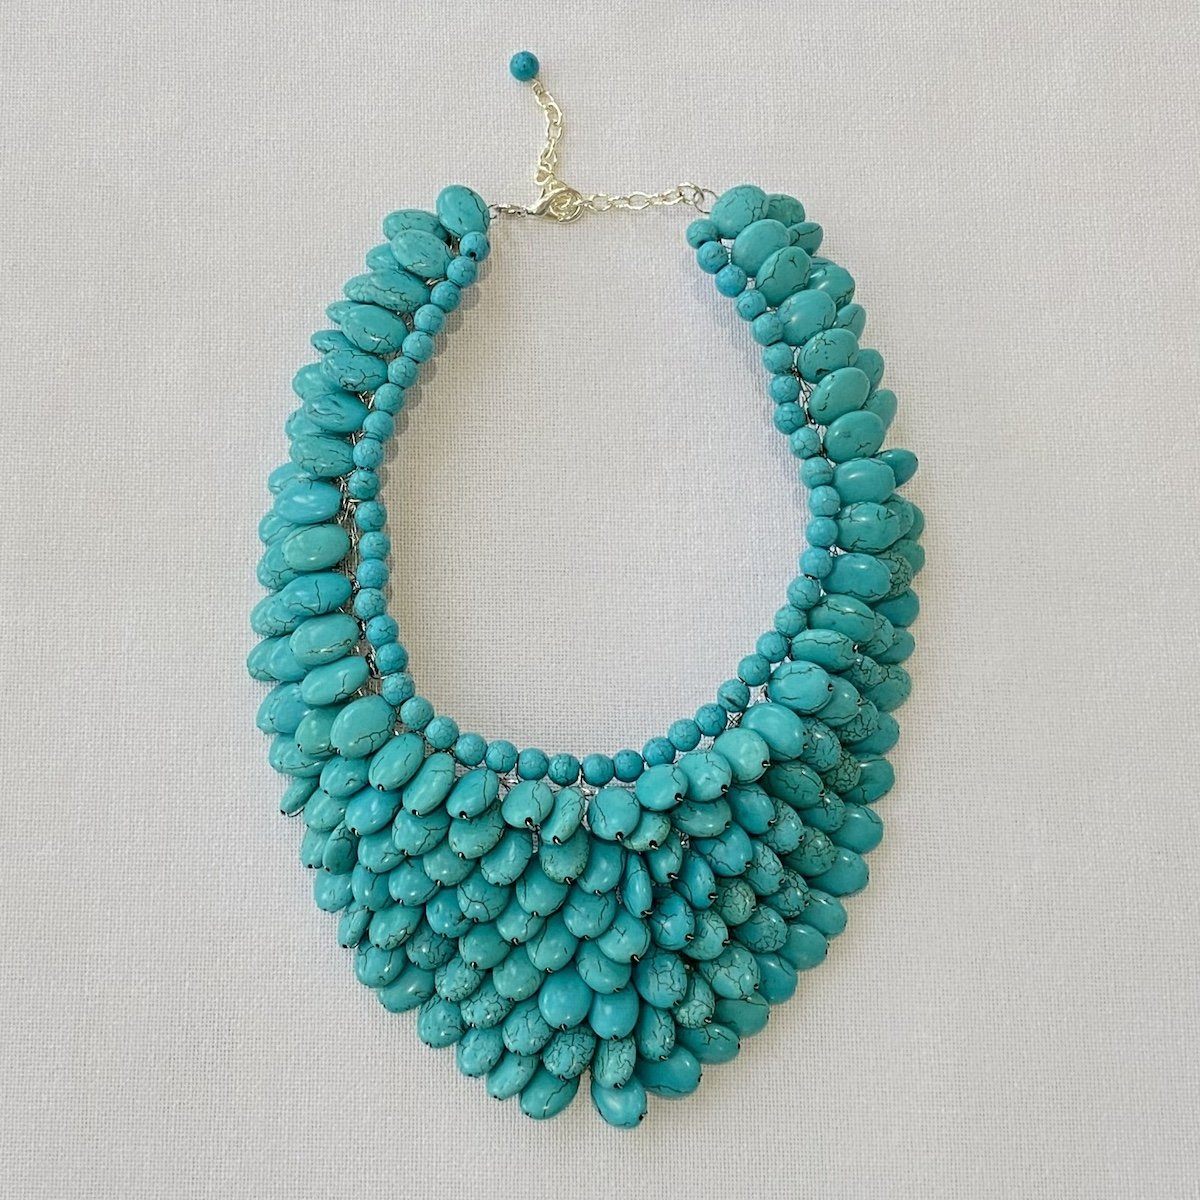 Buy Blue Floral Statement Necklace Online. – Odette